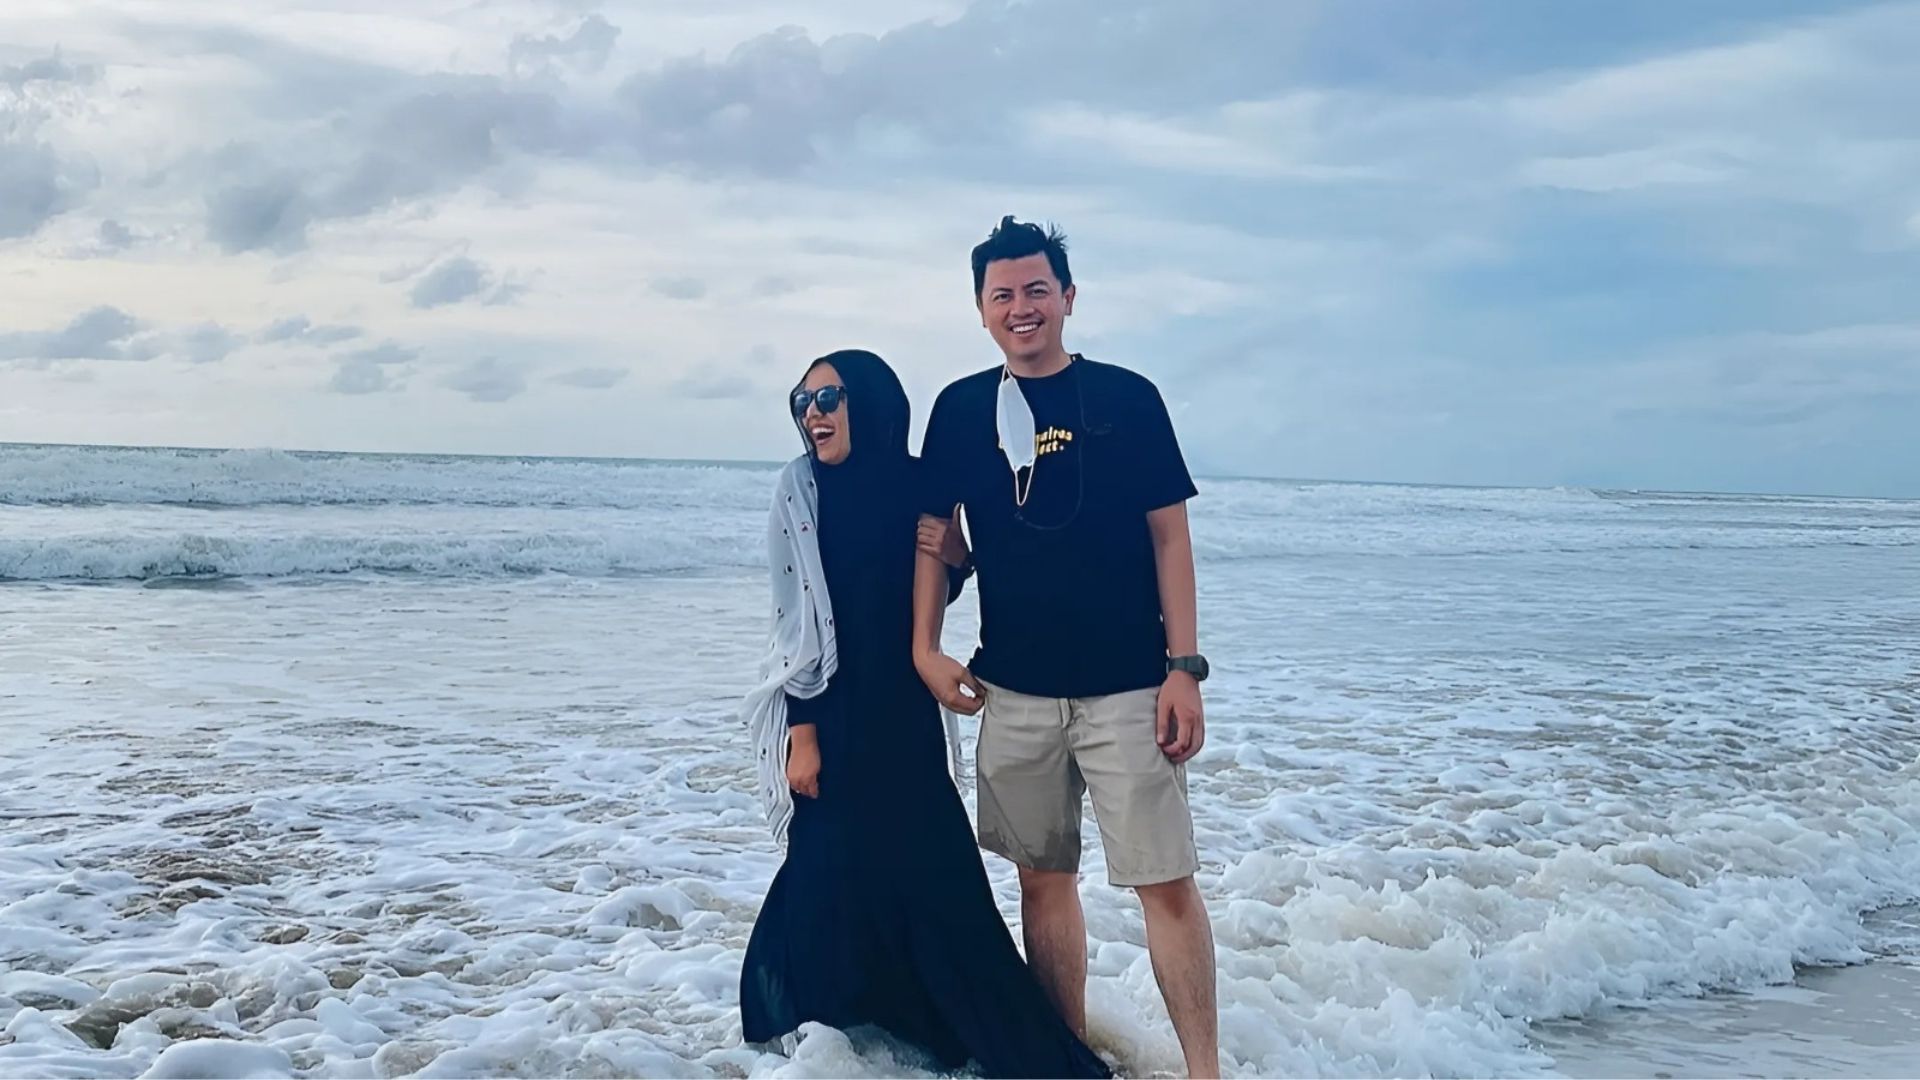 Spot Romantis di Tempat Wisata Pantai Tanjung Lesung Banten. / instagram / @viviriayunita